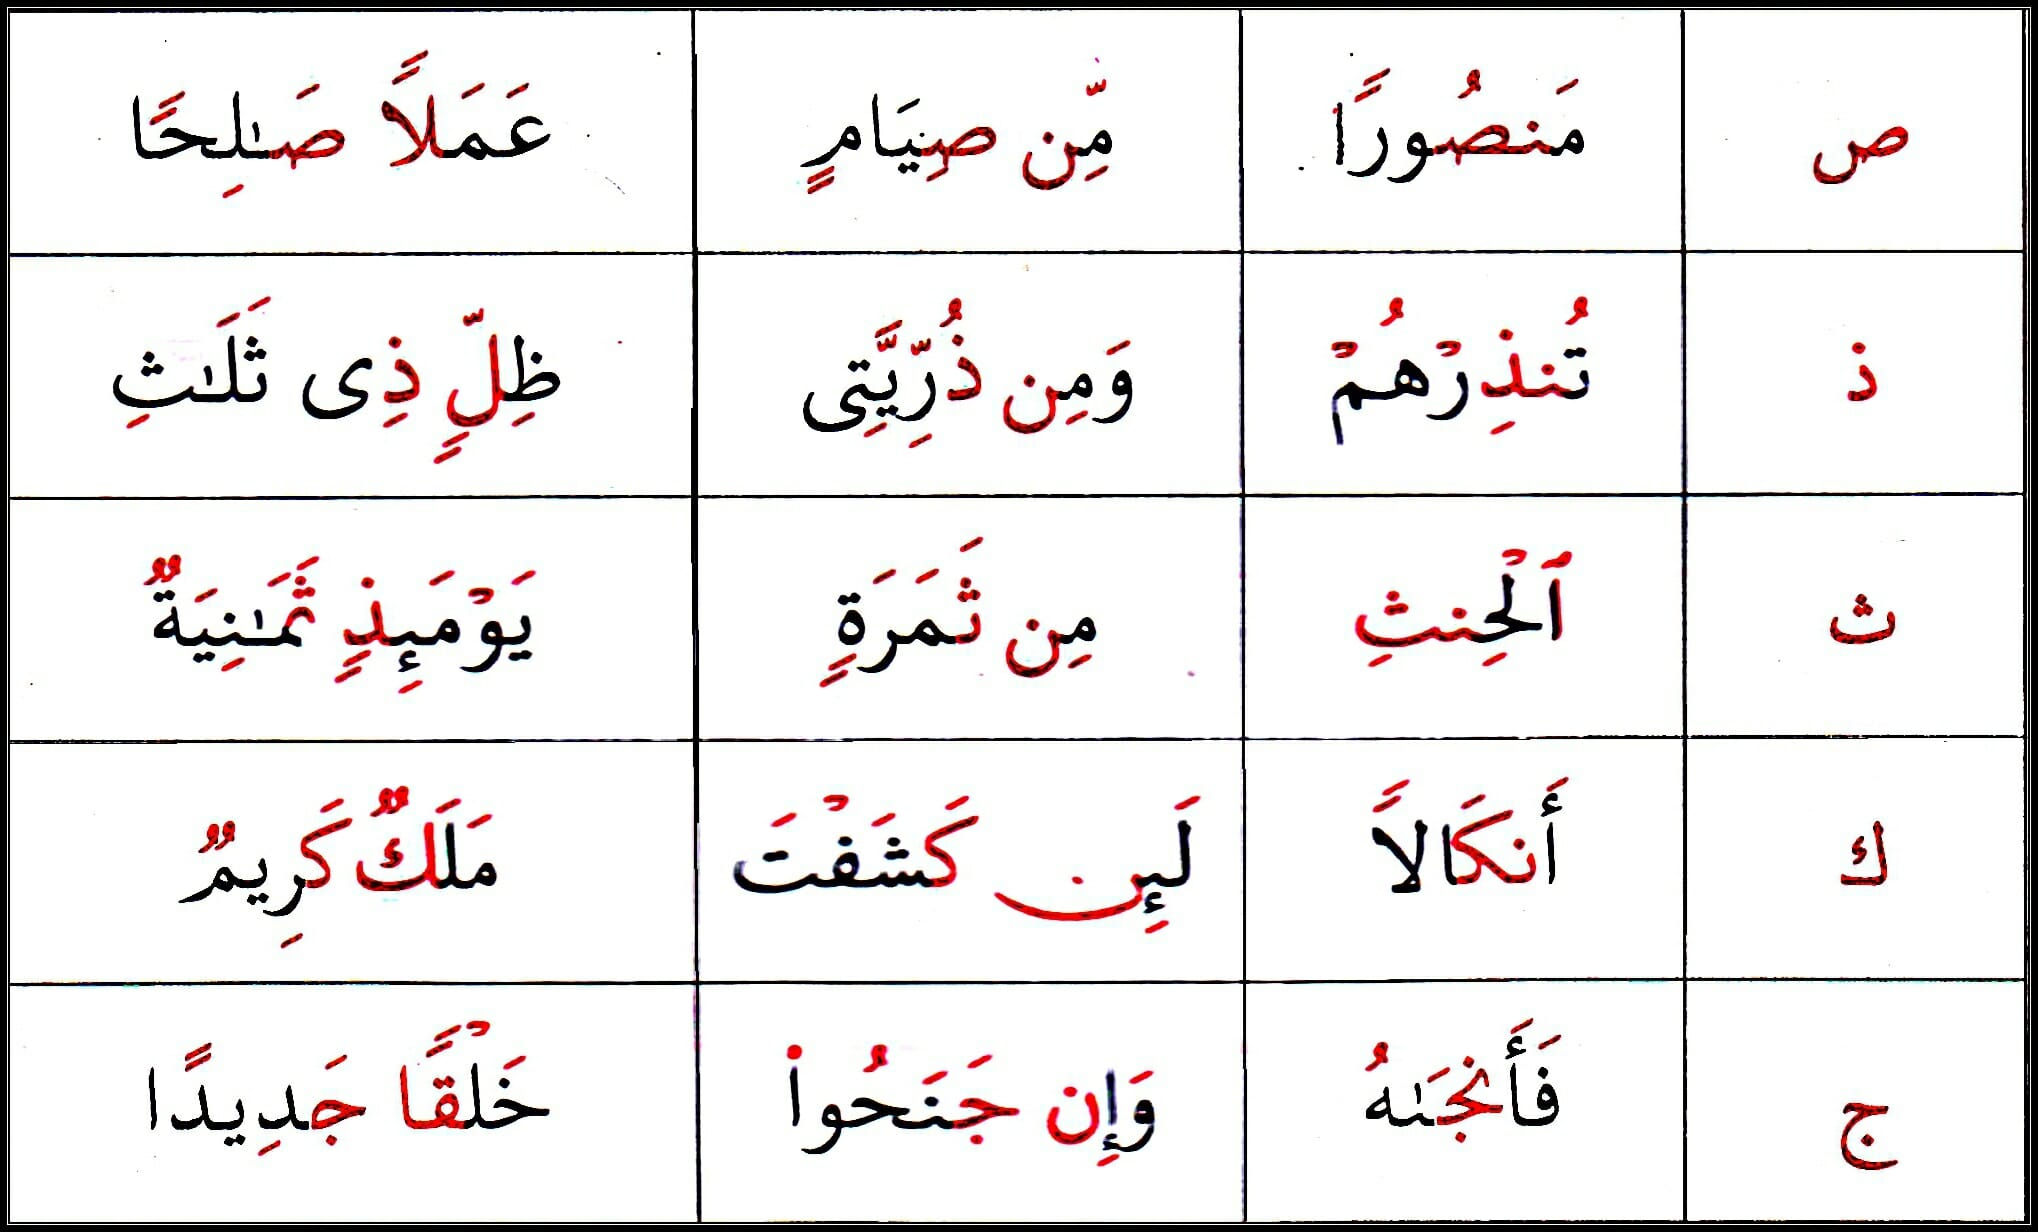 Ikhfaa examples